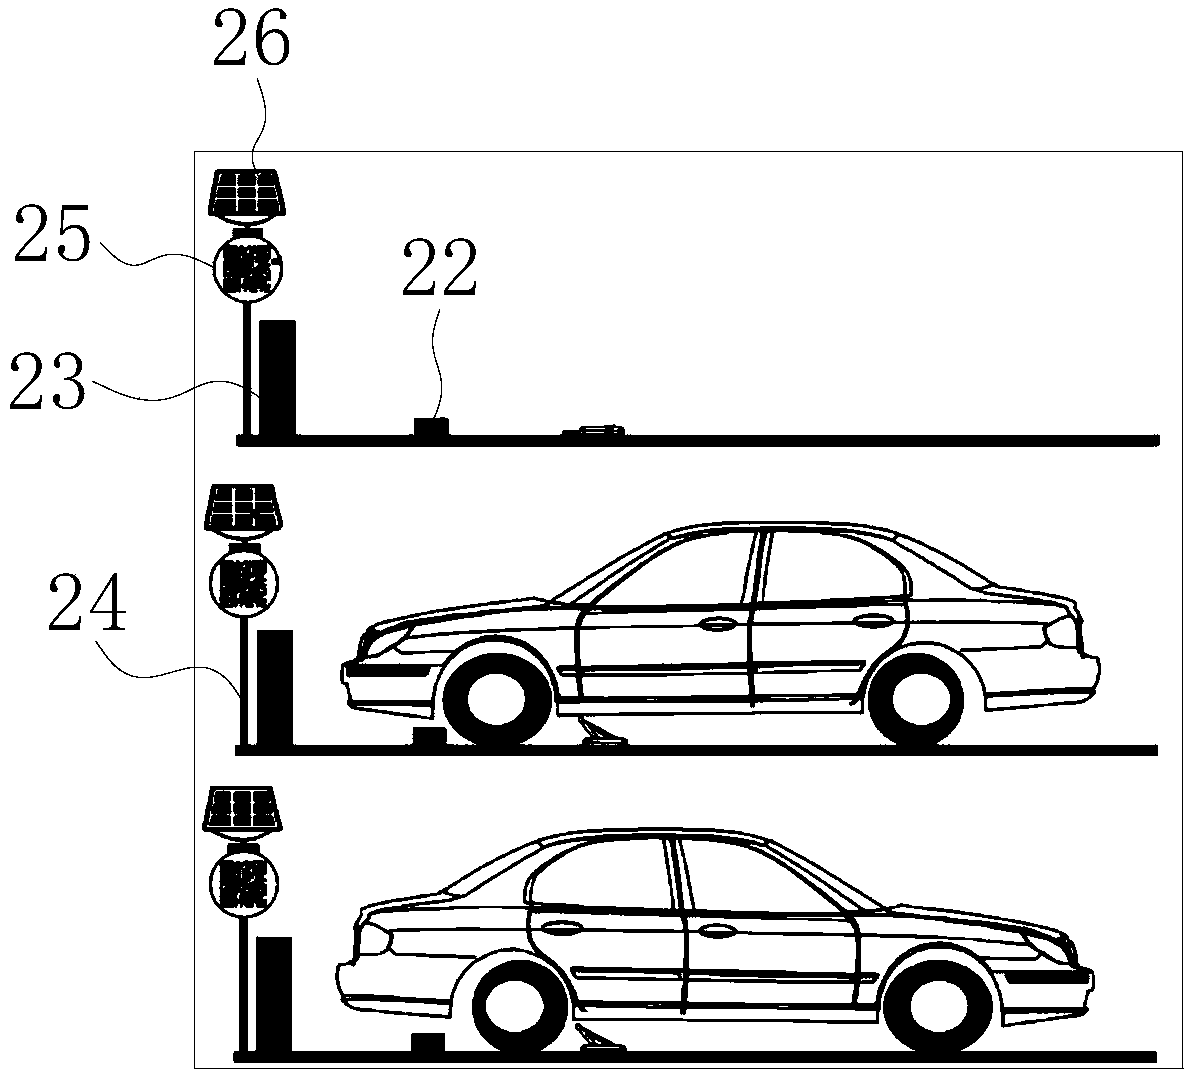 Height-adjustable stop type parking lock